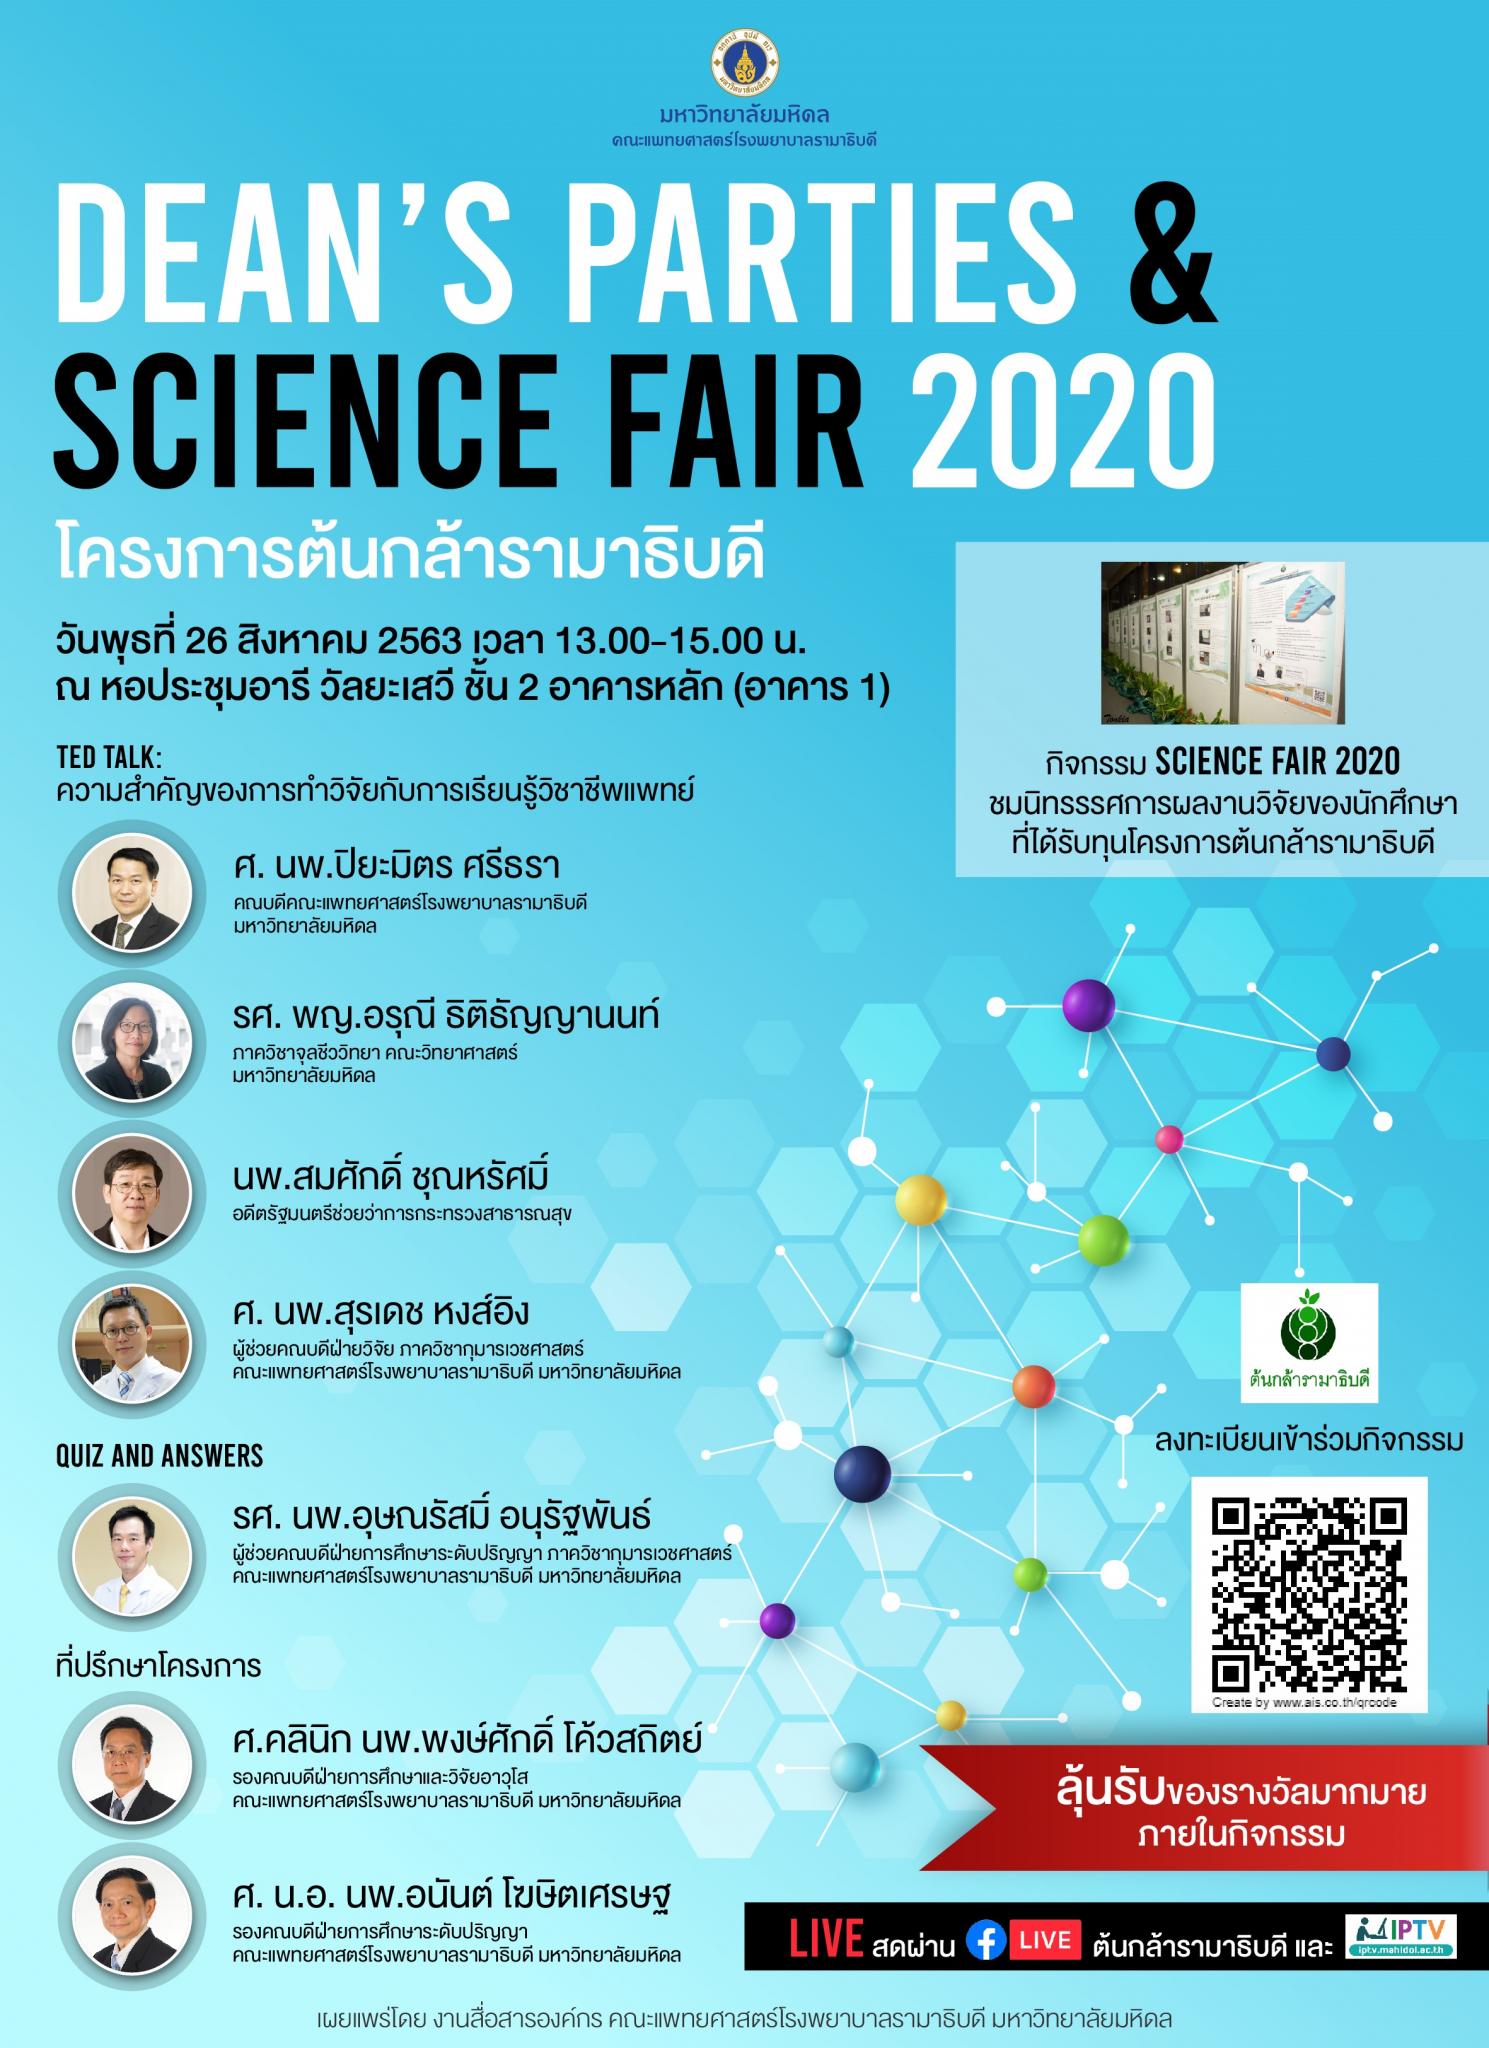 DEAN'S PARTIES & SCIENCE FAIR 2020